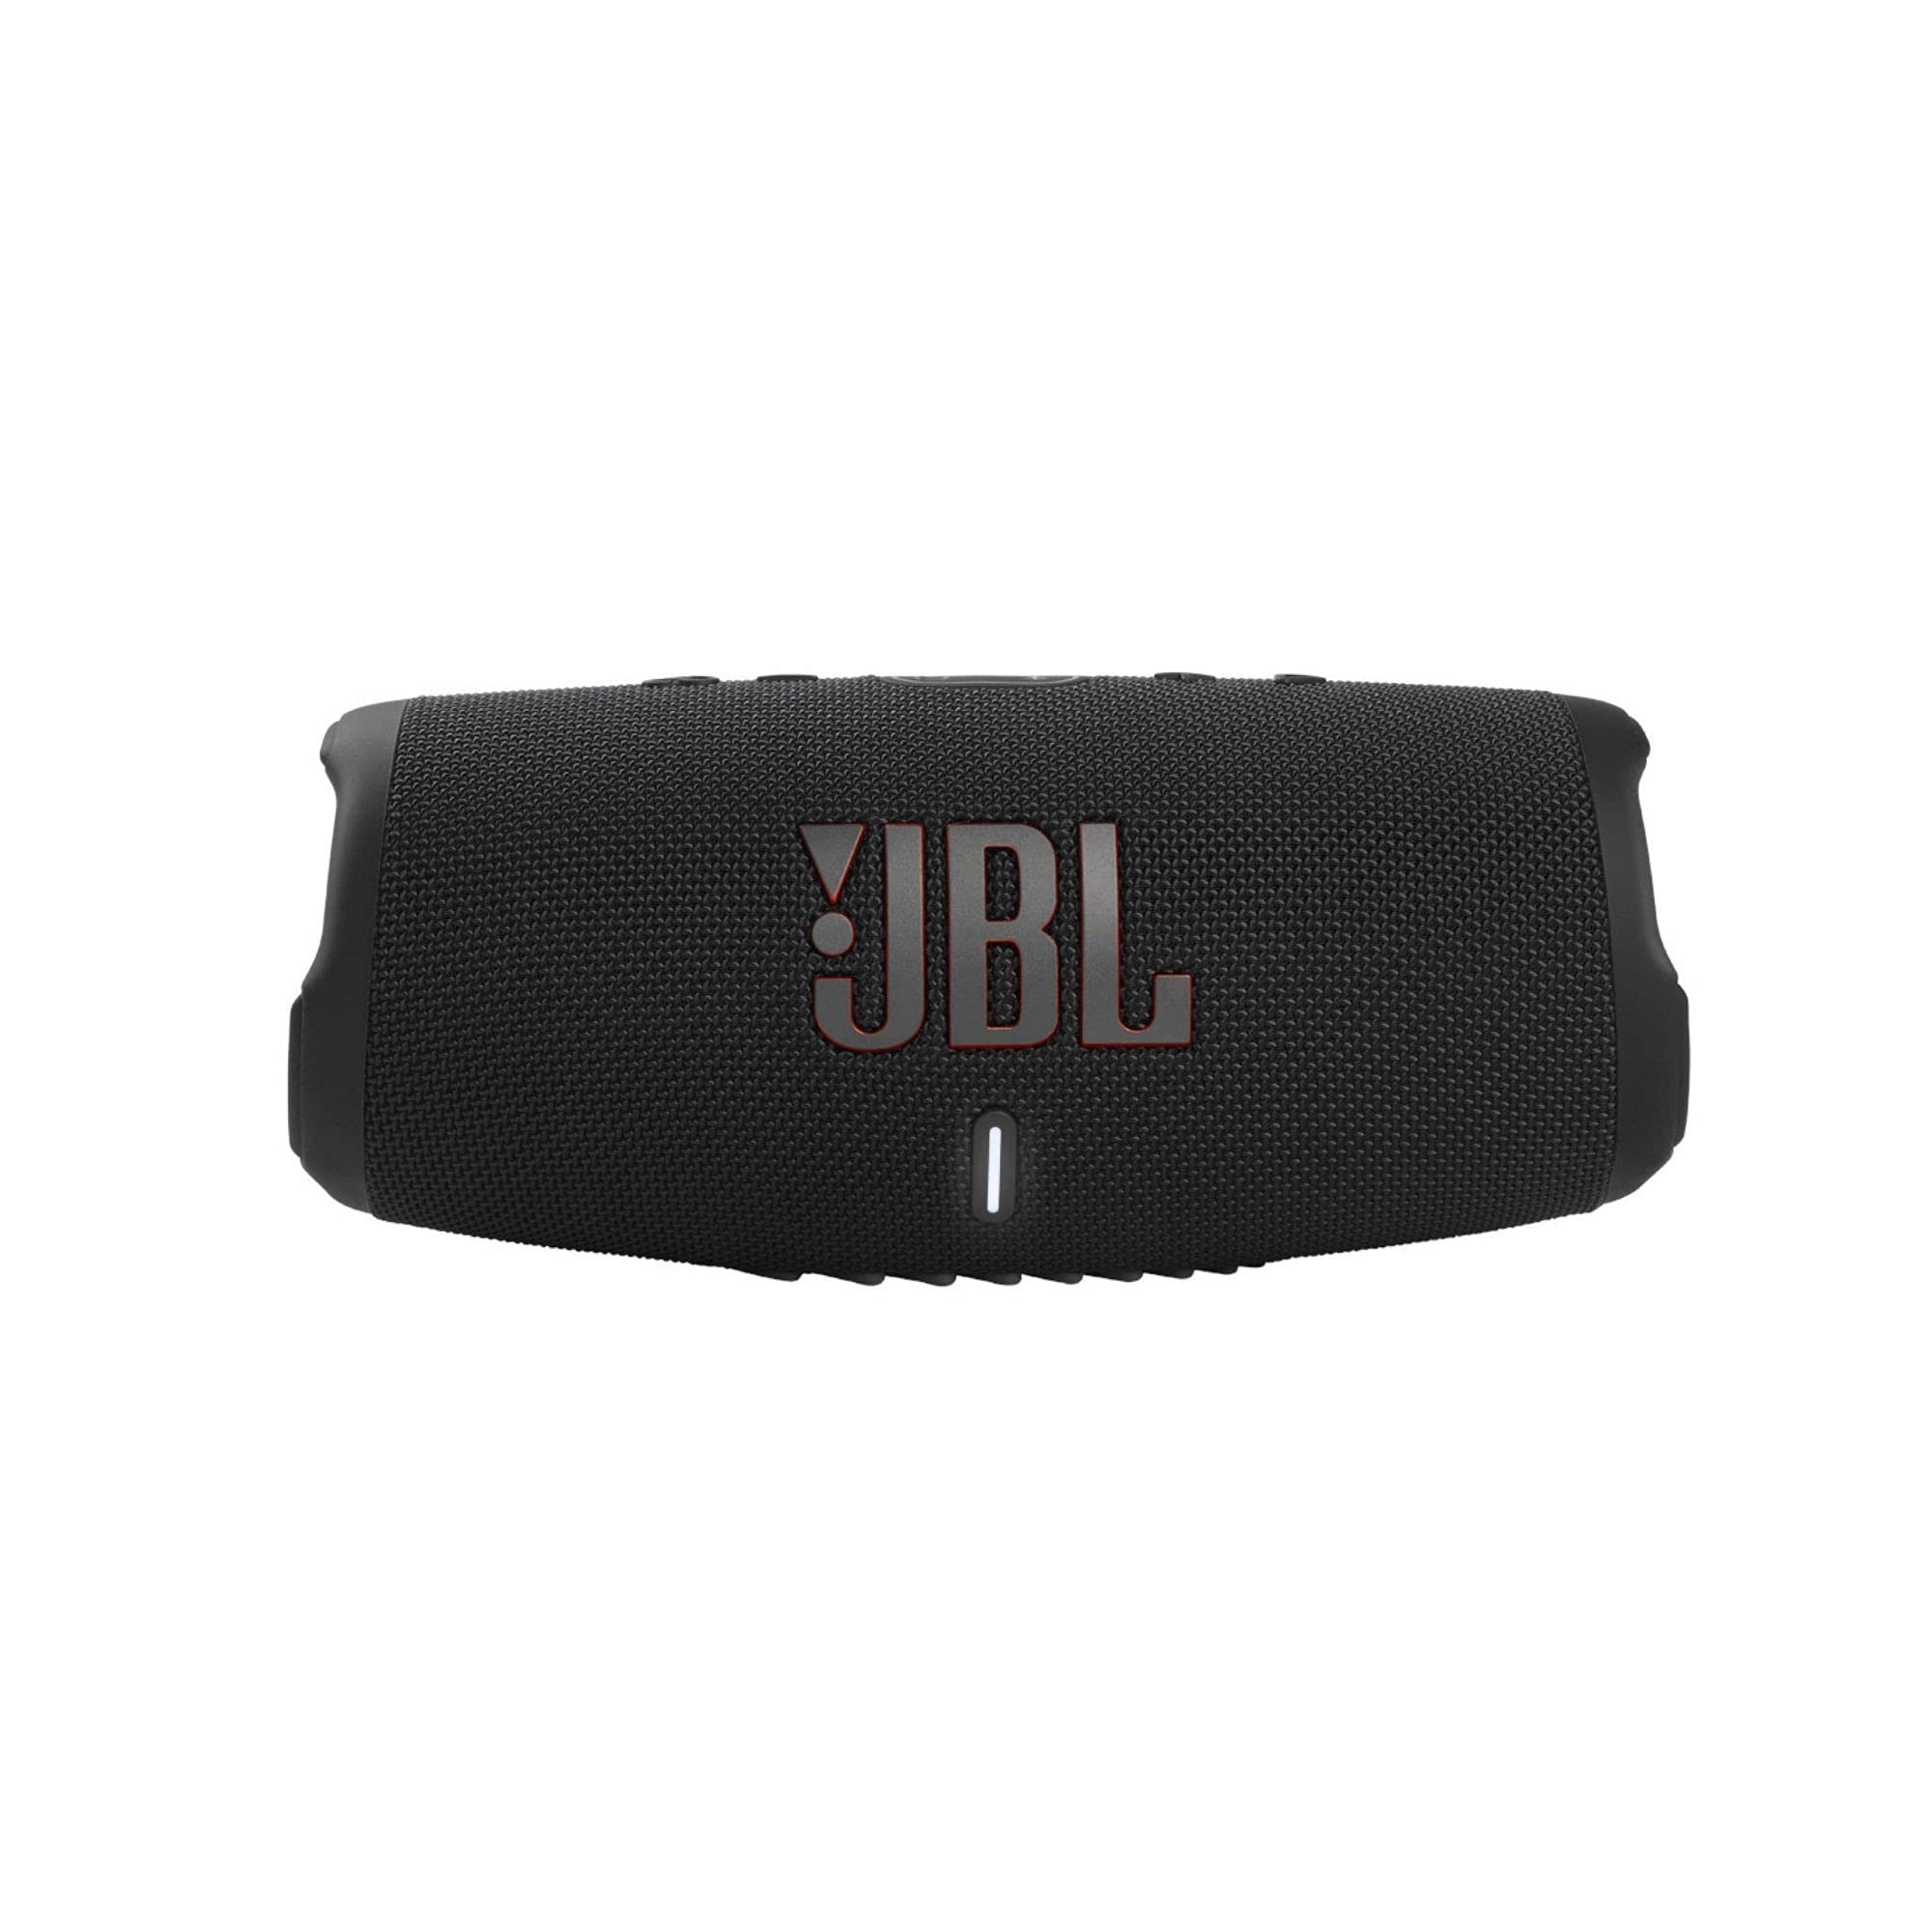 JBL Charge 5 — przenośny głośnik Bluetooth z wodoodpornością IP67 i wyjściem USB do ładowania